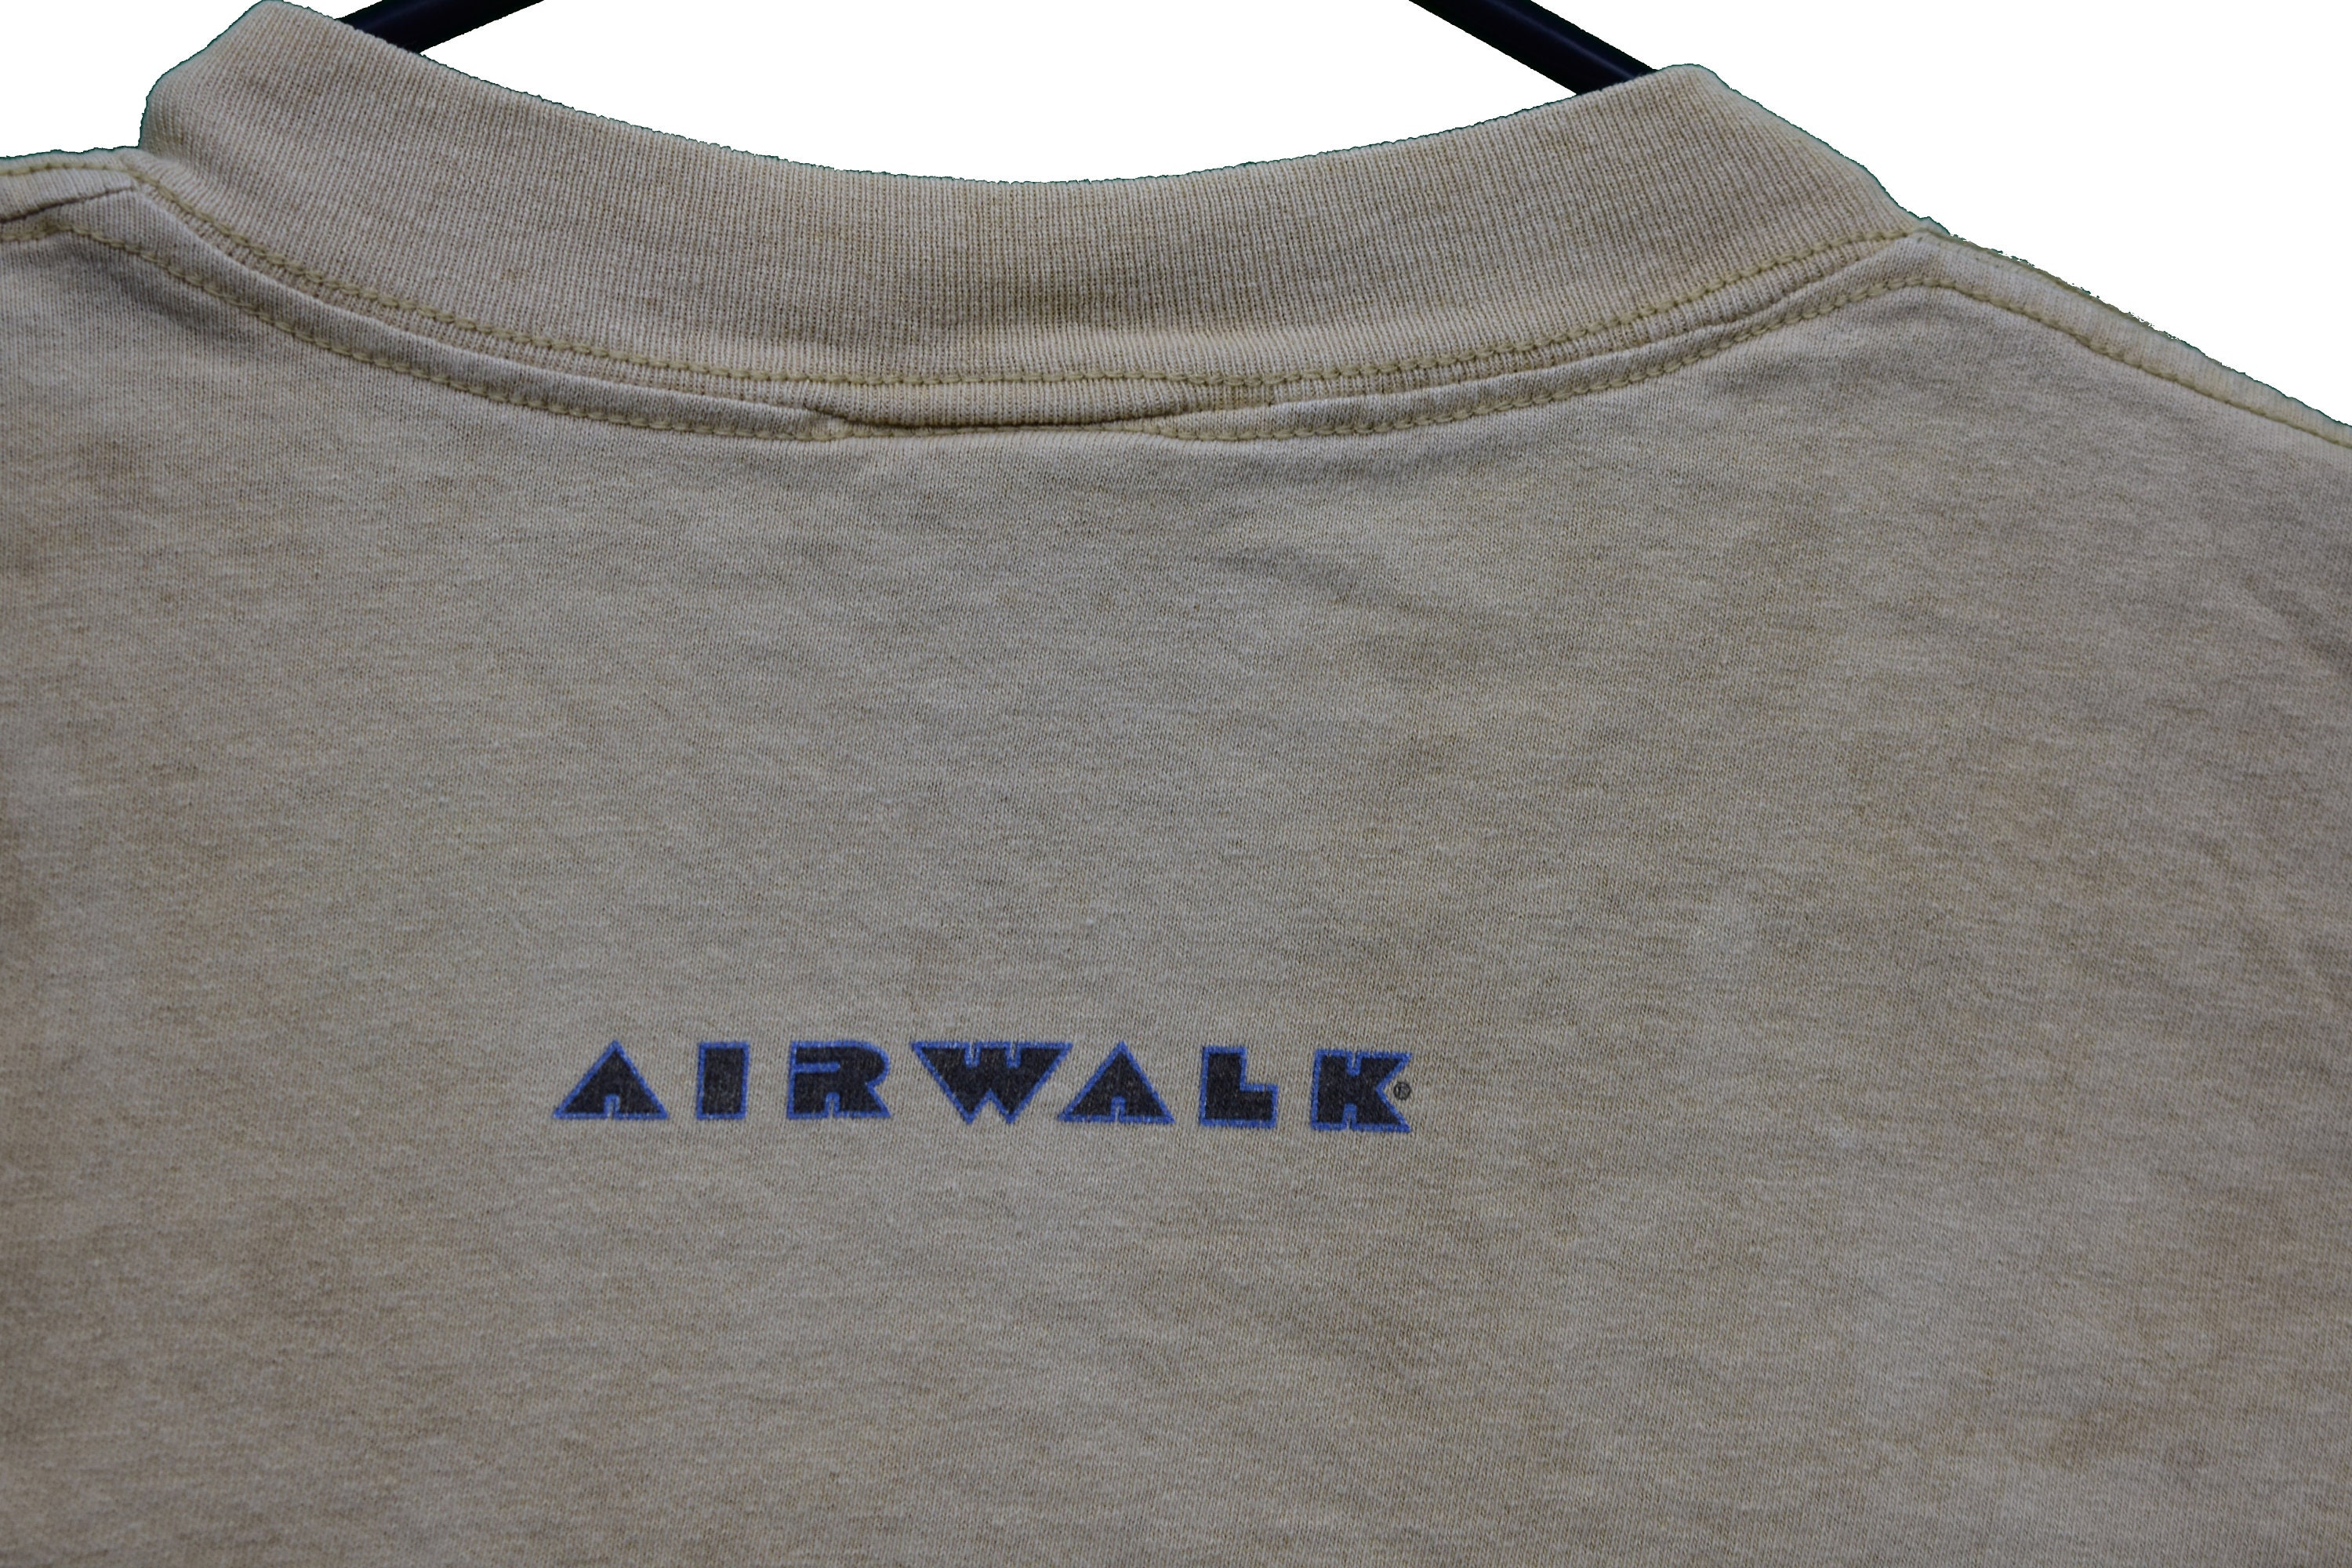 90s airwalk skate tee shirt size medium | Etsy